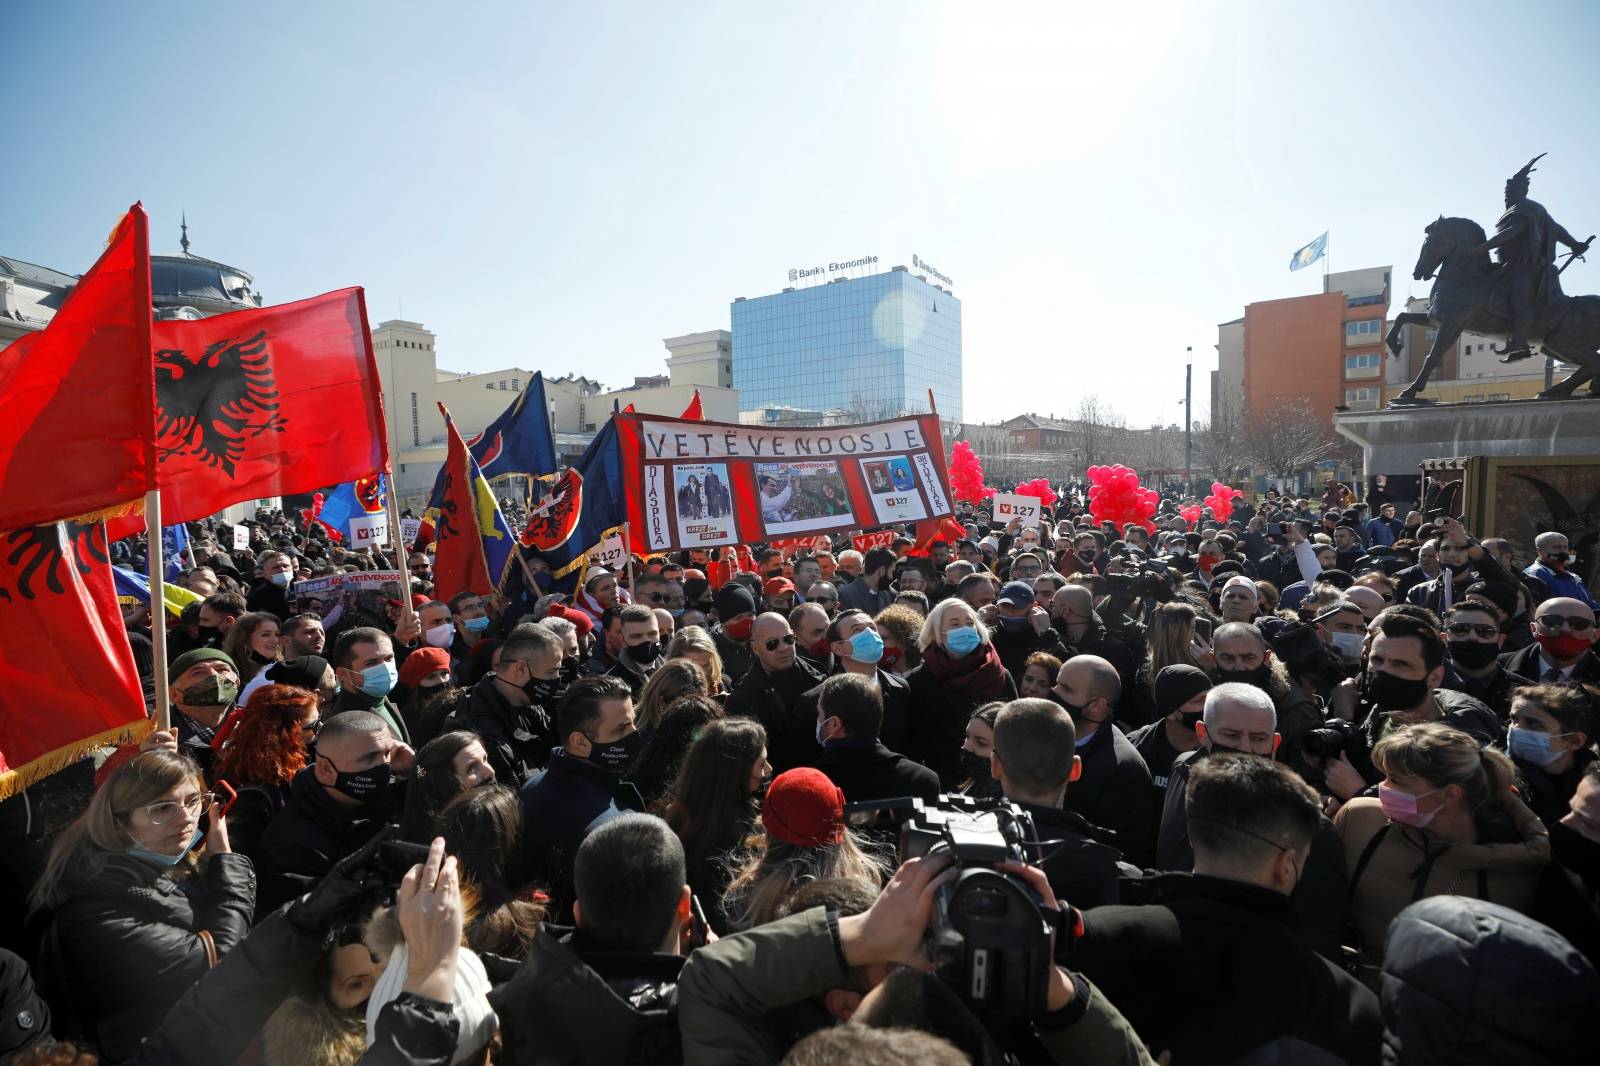 Final campaign rally of Vetevendosje party in Pristina